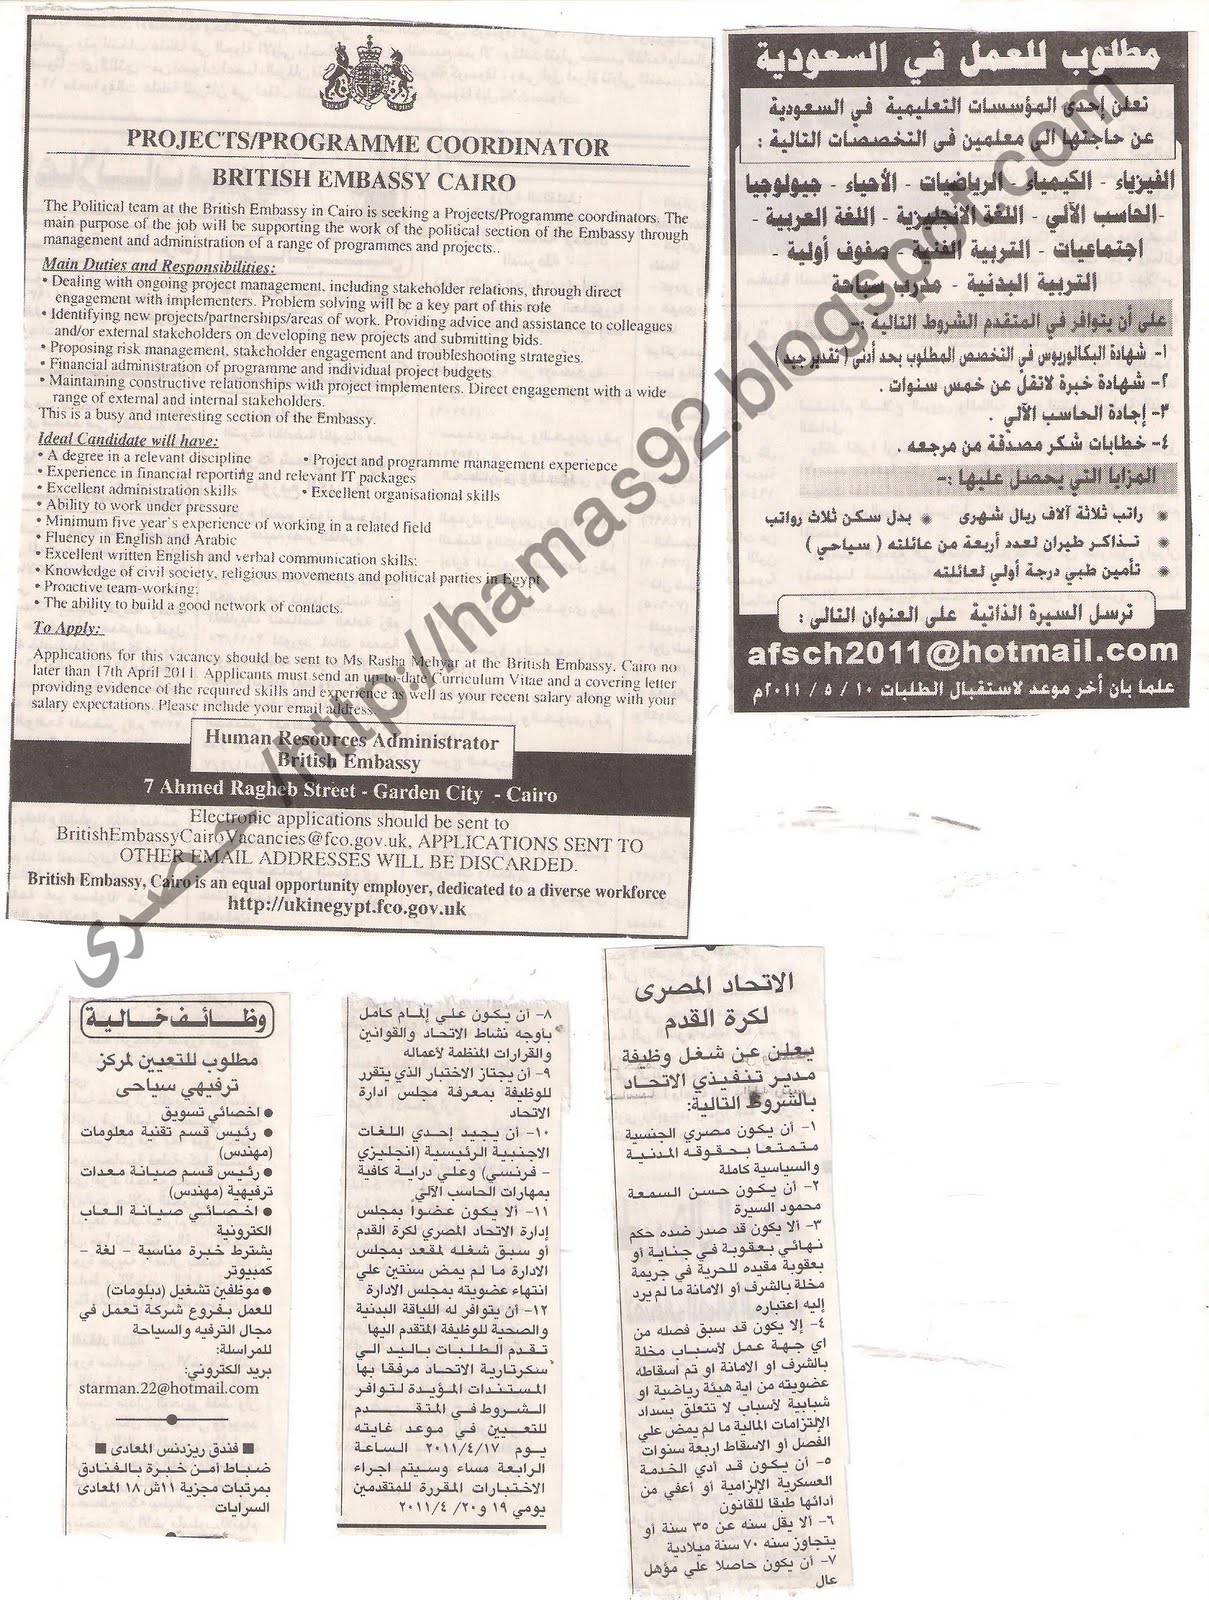 وظائف جريدة الاهرام 9 ابريل 2011 - وظائف خالية بتاريخ اليوم 9 ابريل 2011 Picture+002